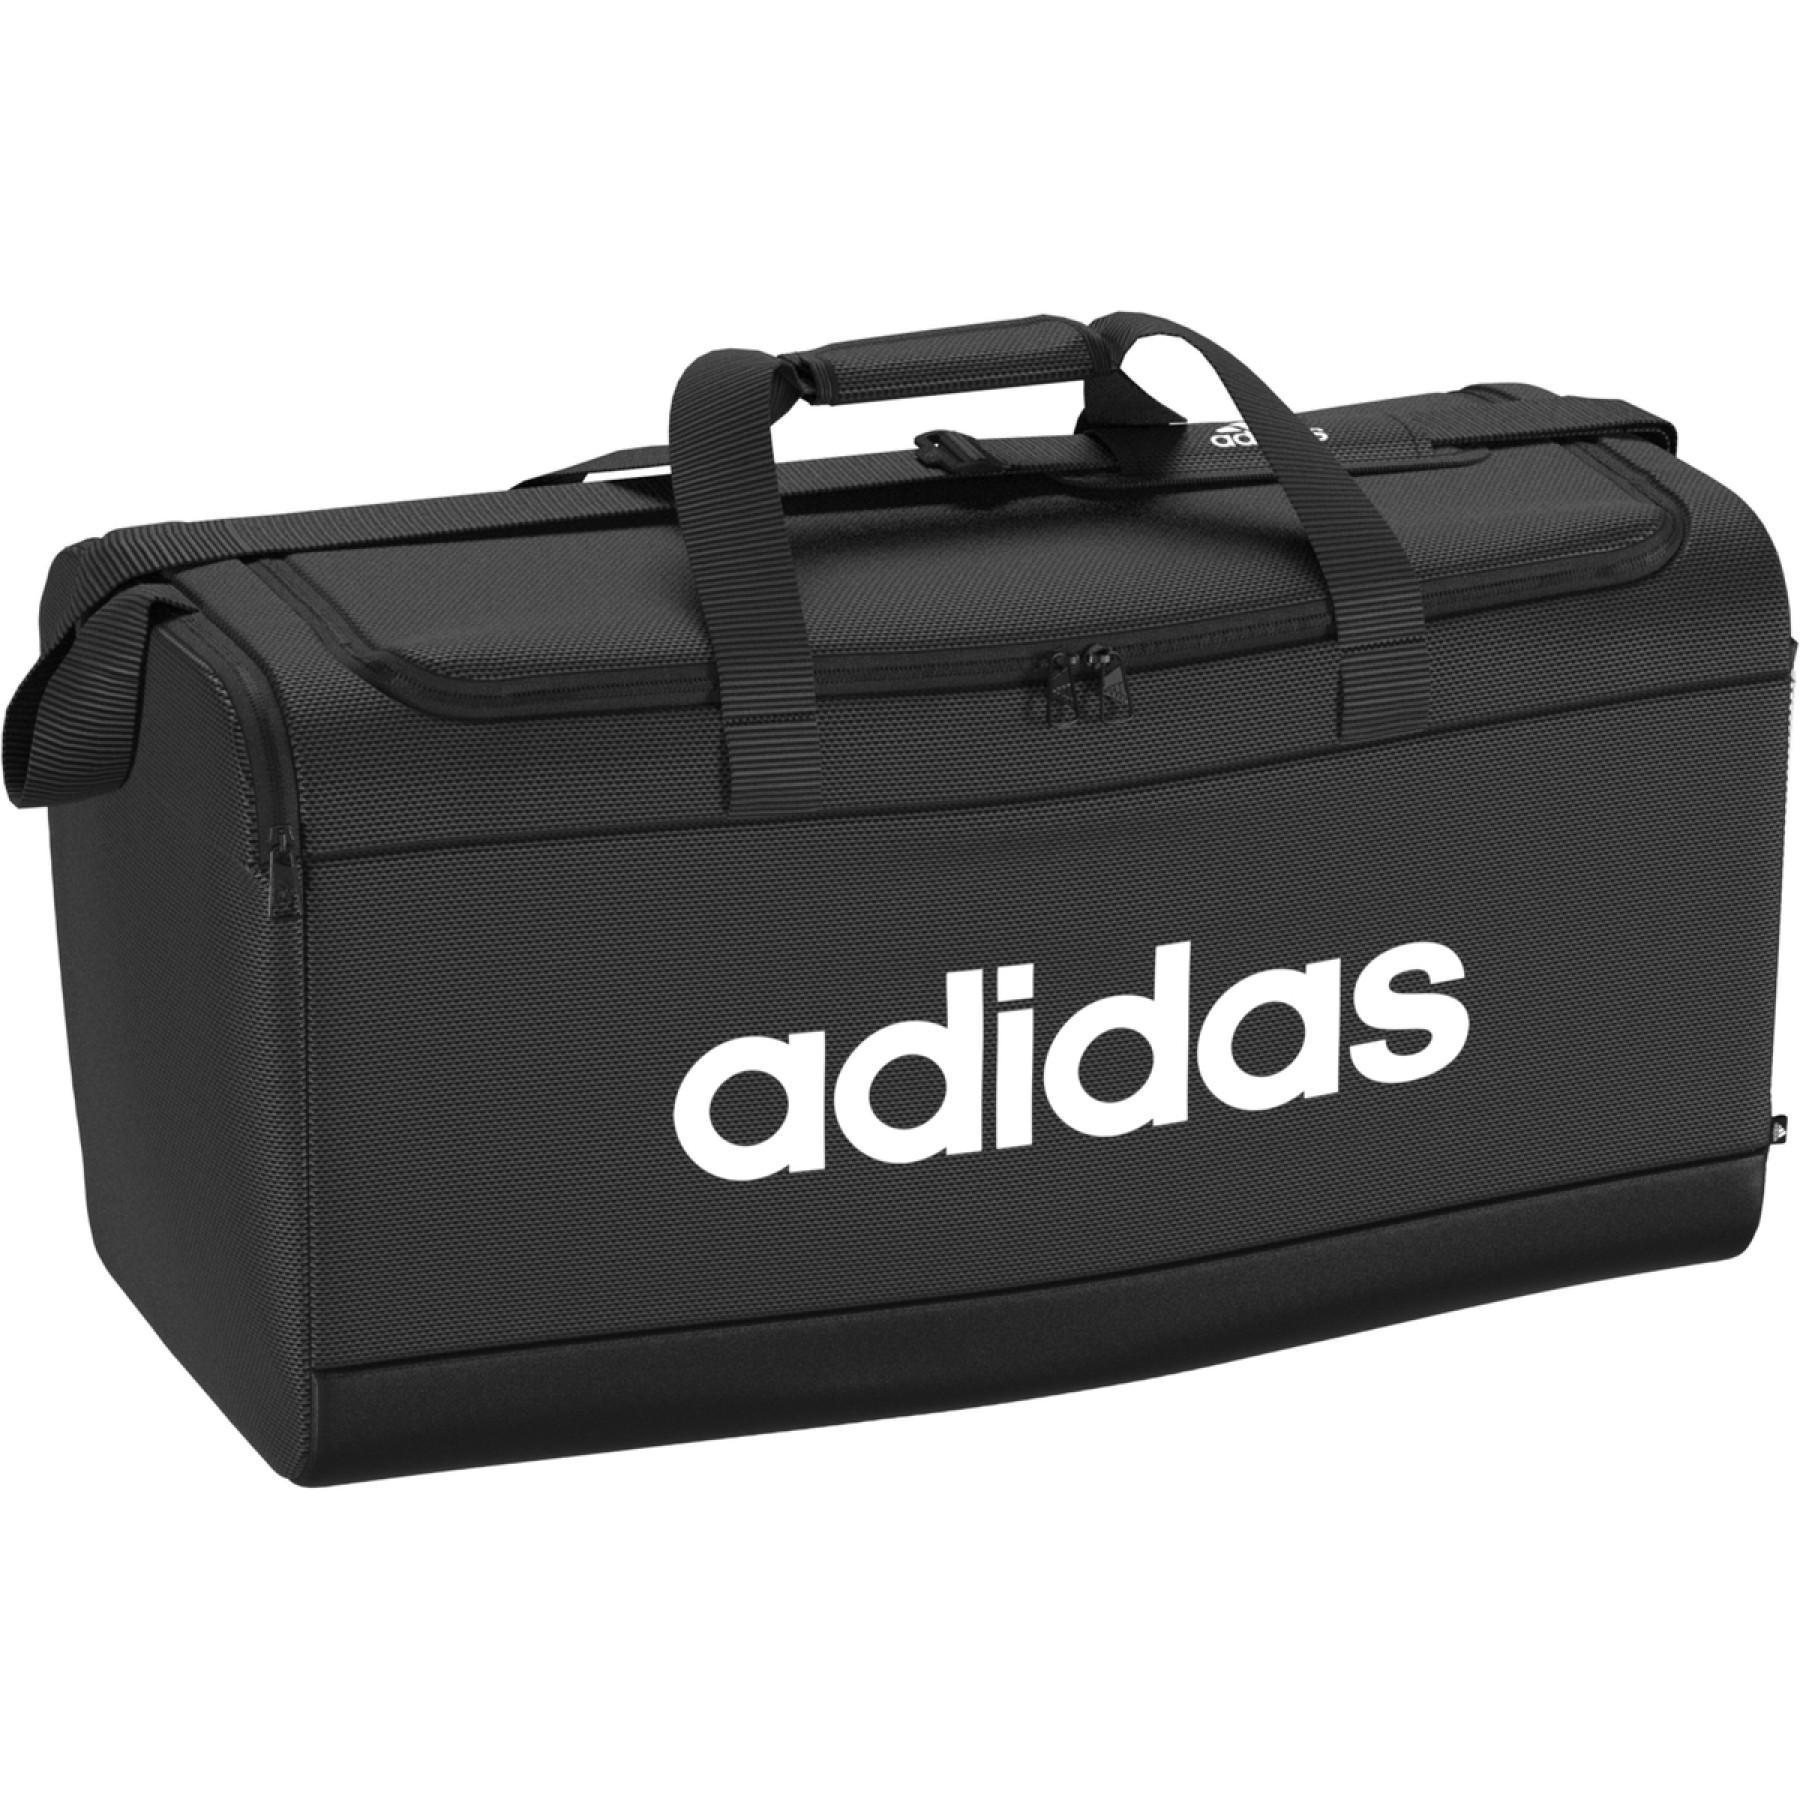 Bolsa de deporte adidas Essentials Logo Large